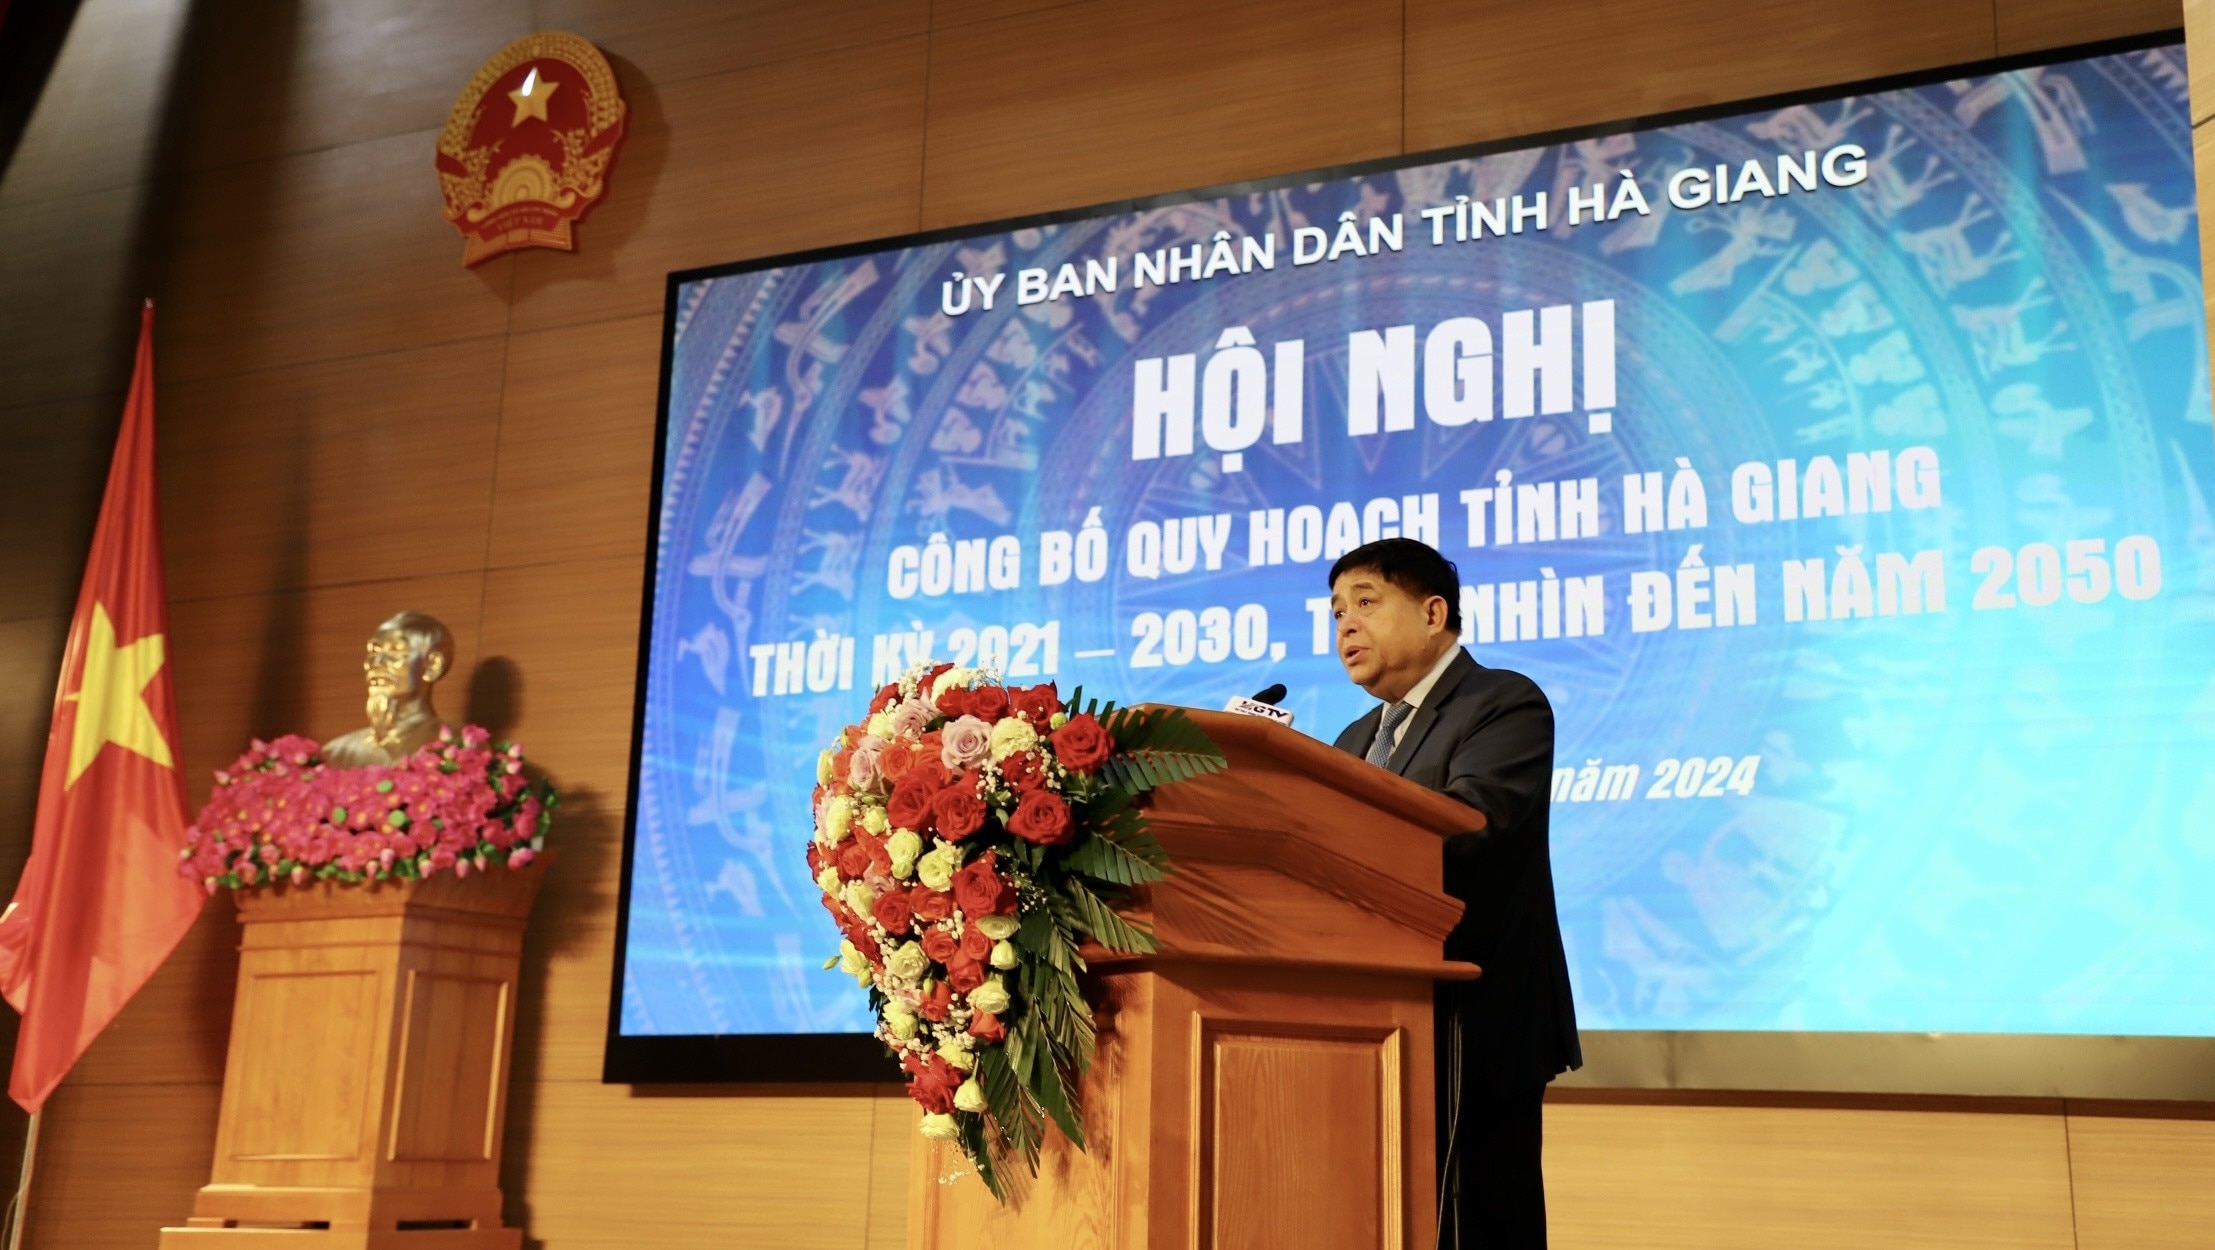 Quy hoạch tỉnh Hà Giang: Bứt phá để hướng tới sự phát triển toàn diện, bền vững